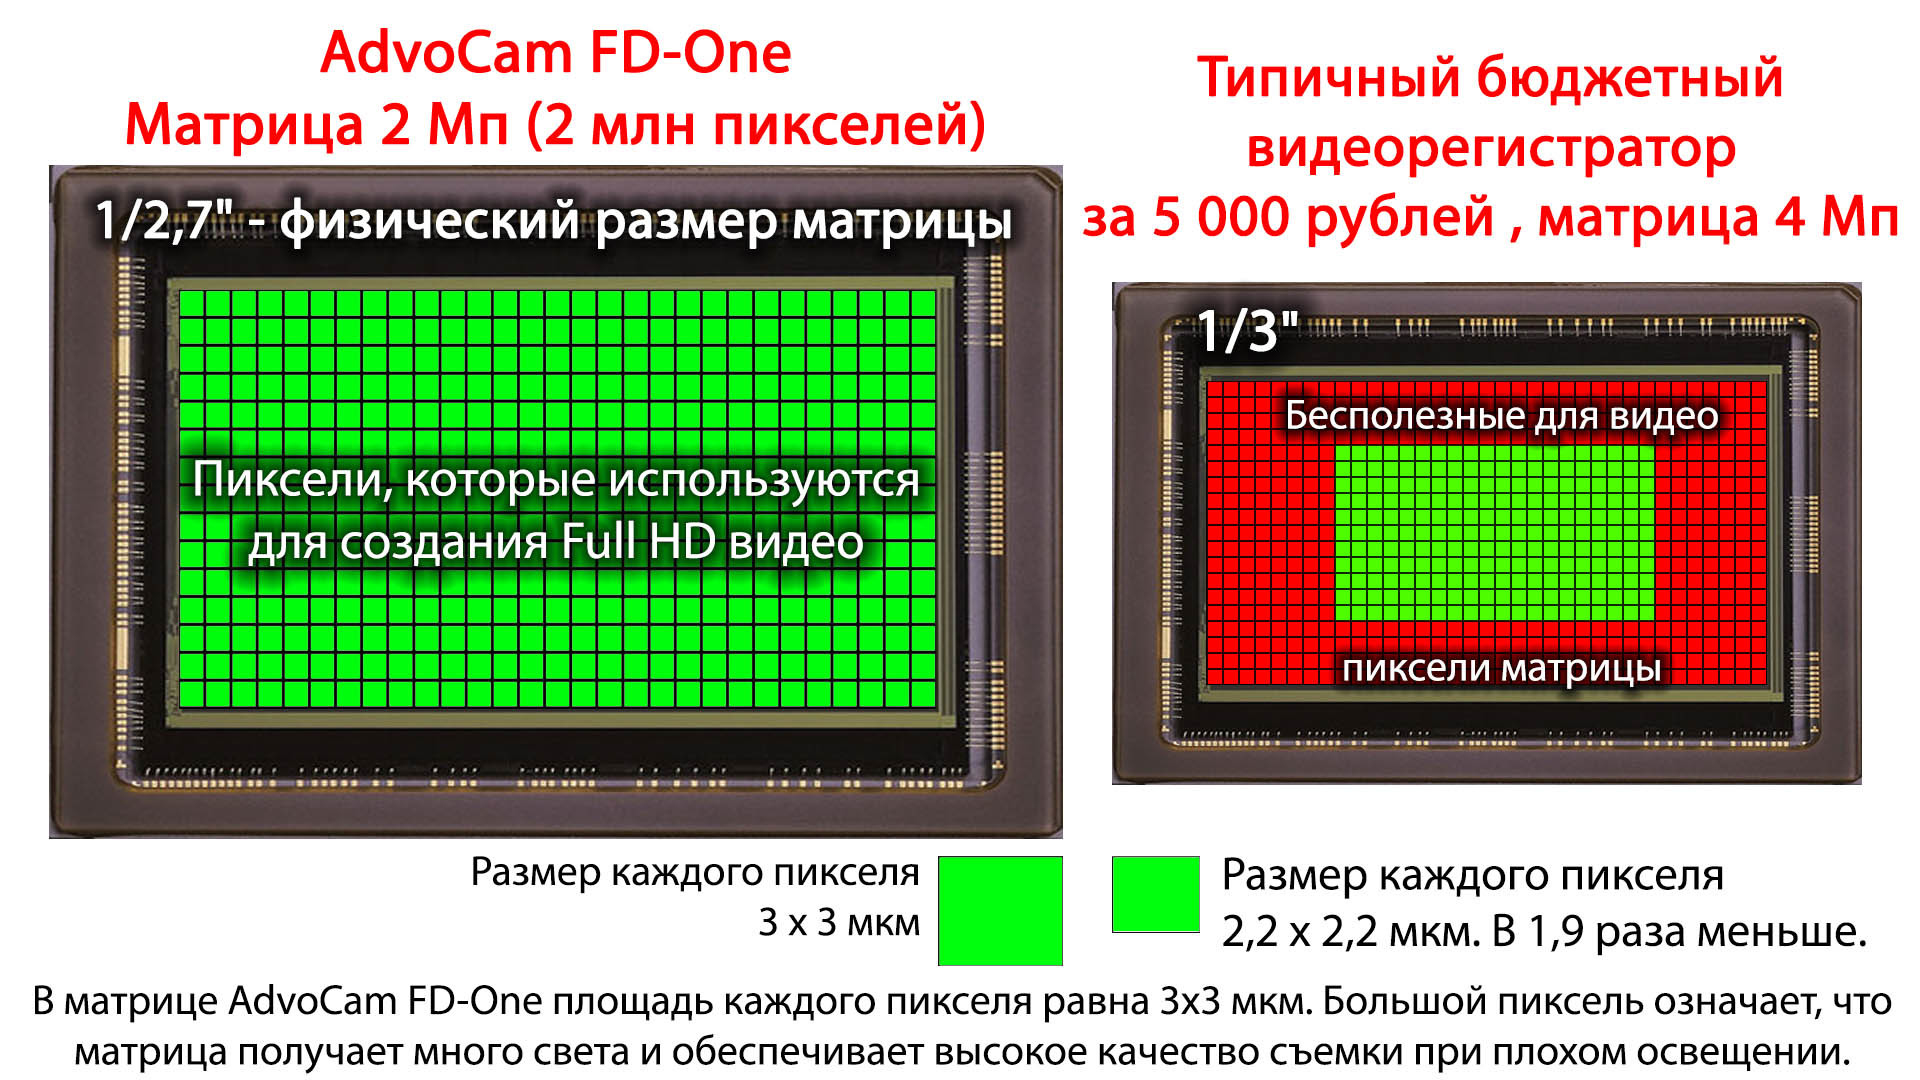 Размер пикселя матрицы. Размер пикселя матрицы фотоаппарата. Матрица фотоаппарата. Разрешение матрицы фотоаппарата. Размеры матриц фотоаппаратов.